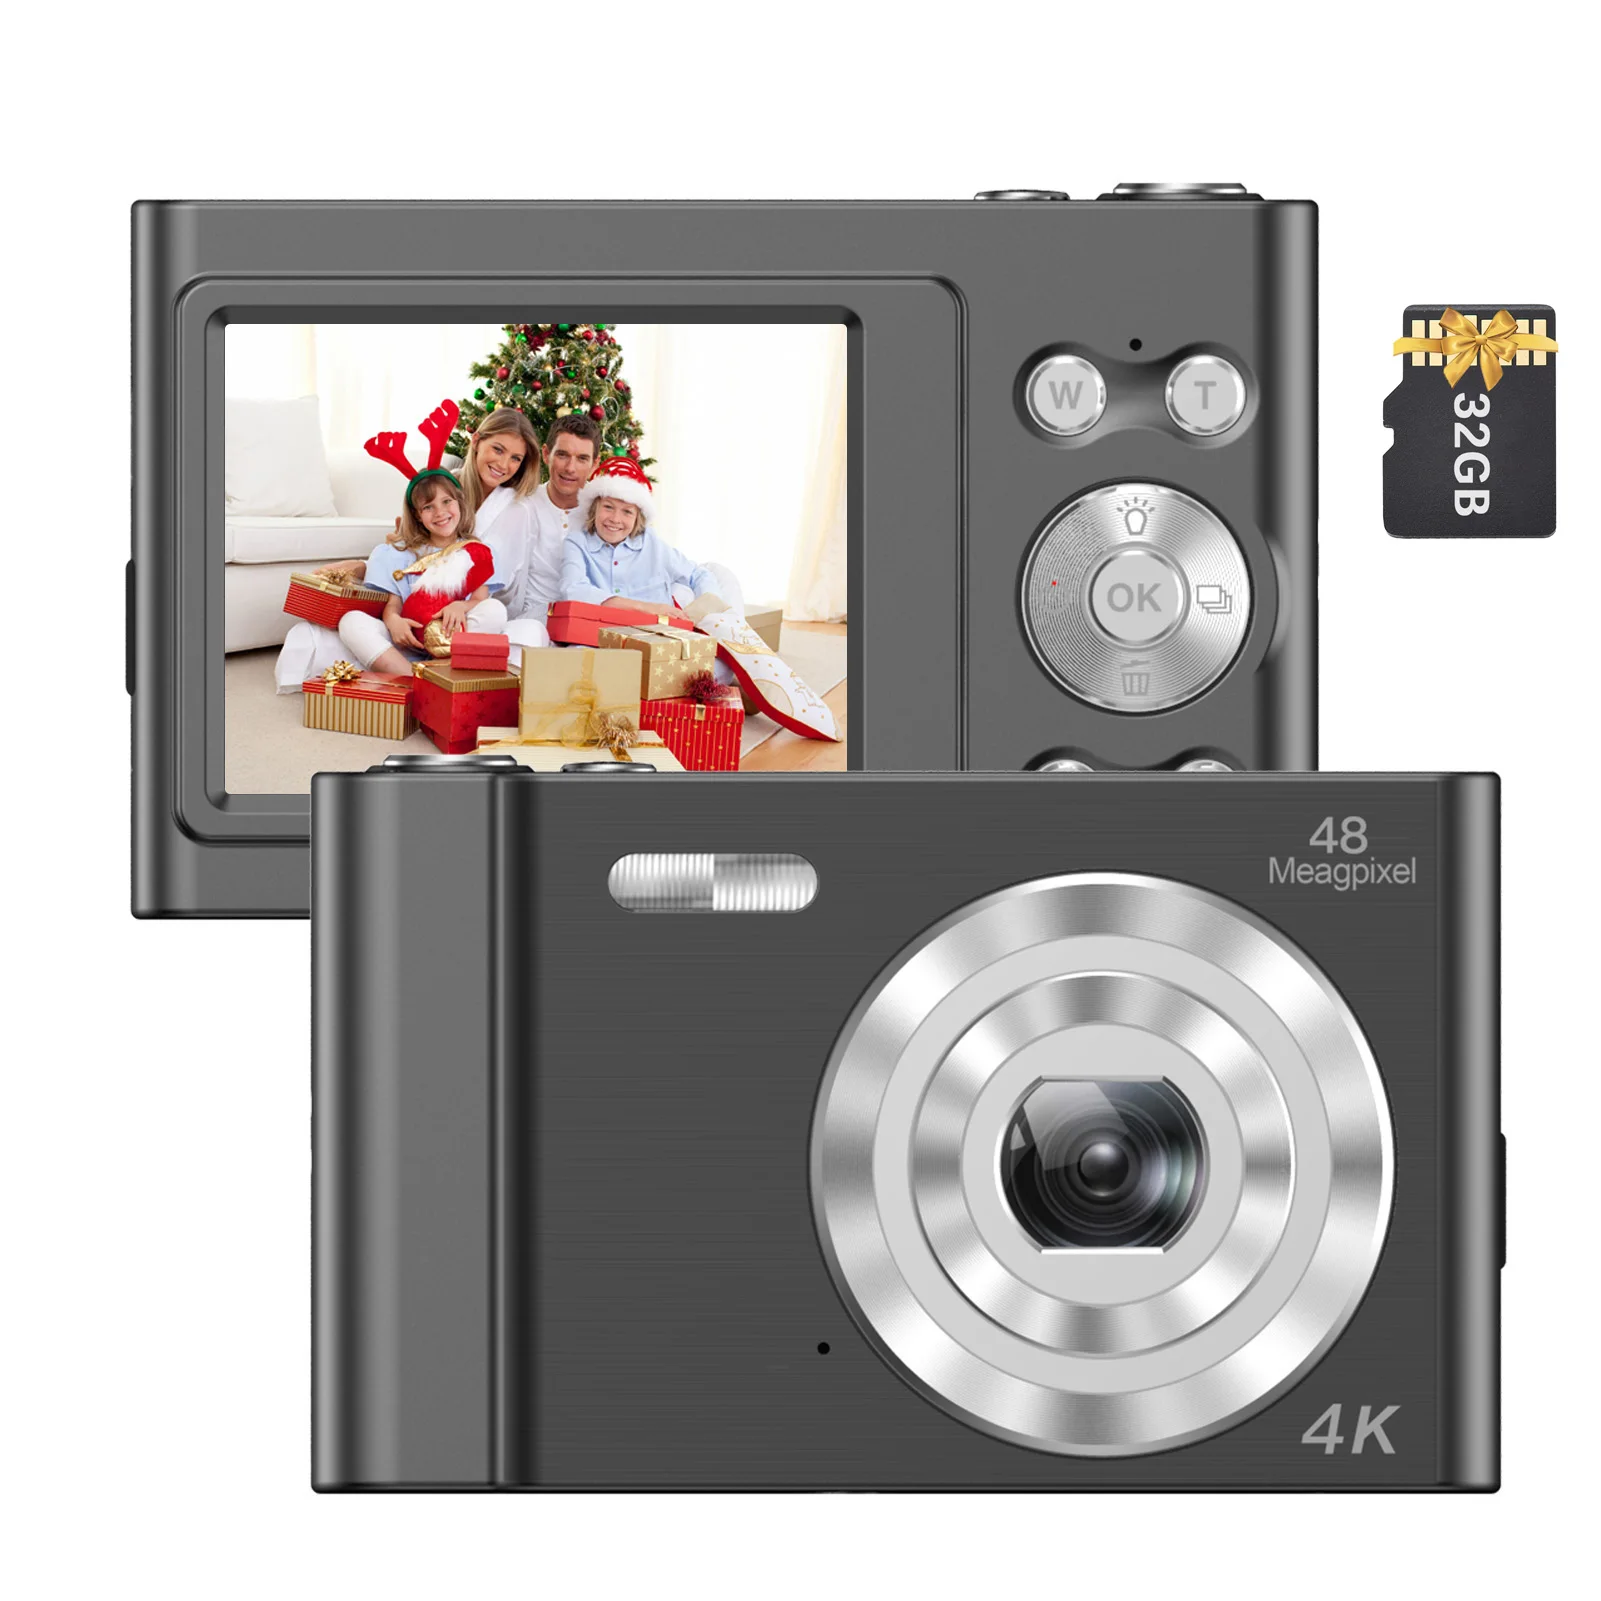 

Цифровая видеокамера Andoer 4K 48 МП, видеокамера с автофокусом, 16-кратным зумом, функцией стабилизации лица, обнаружения улыбки, встроенной вспы...